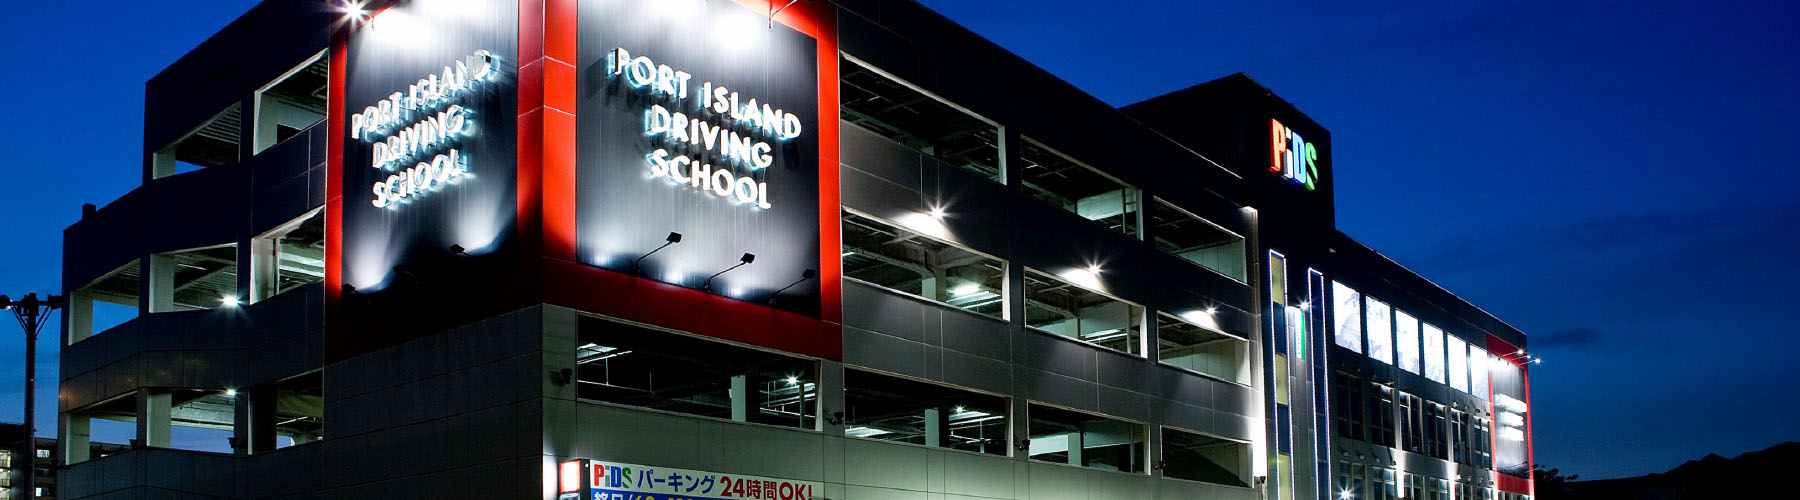 けん引 大型特殊 Pids ポートアイランドドライビングスクール 神戸市で運転免許取得なら安心の自動車学校 教習所